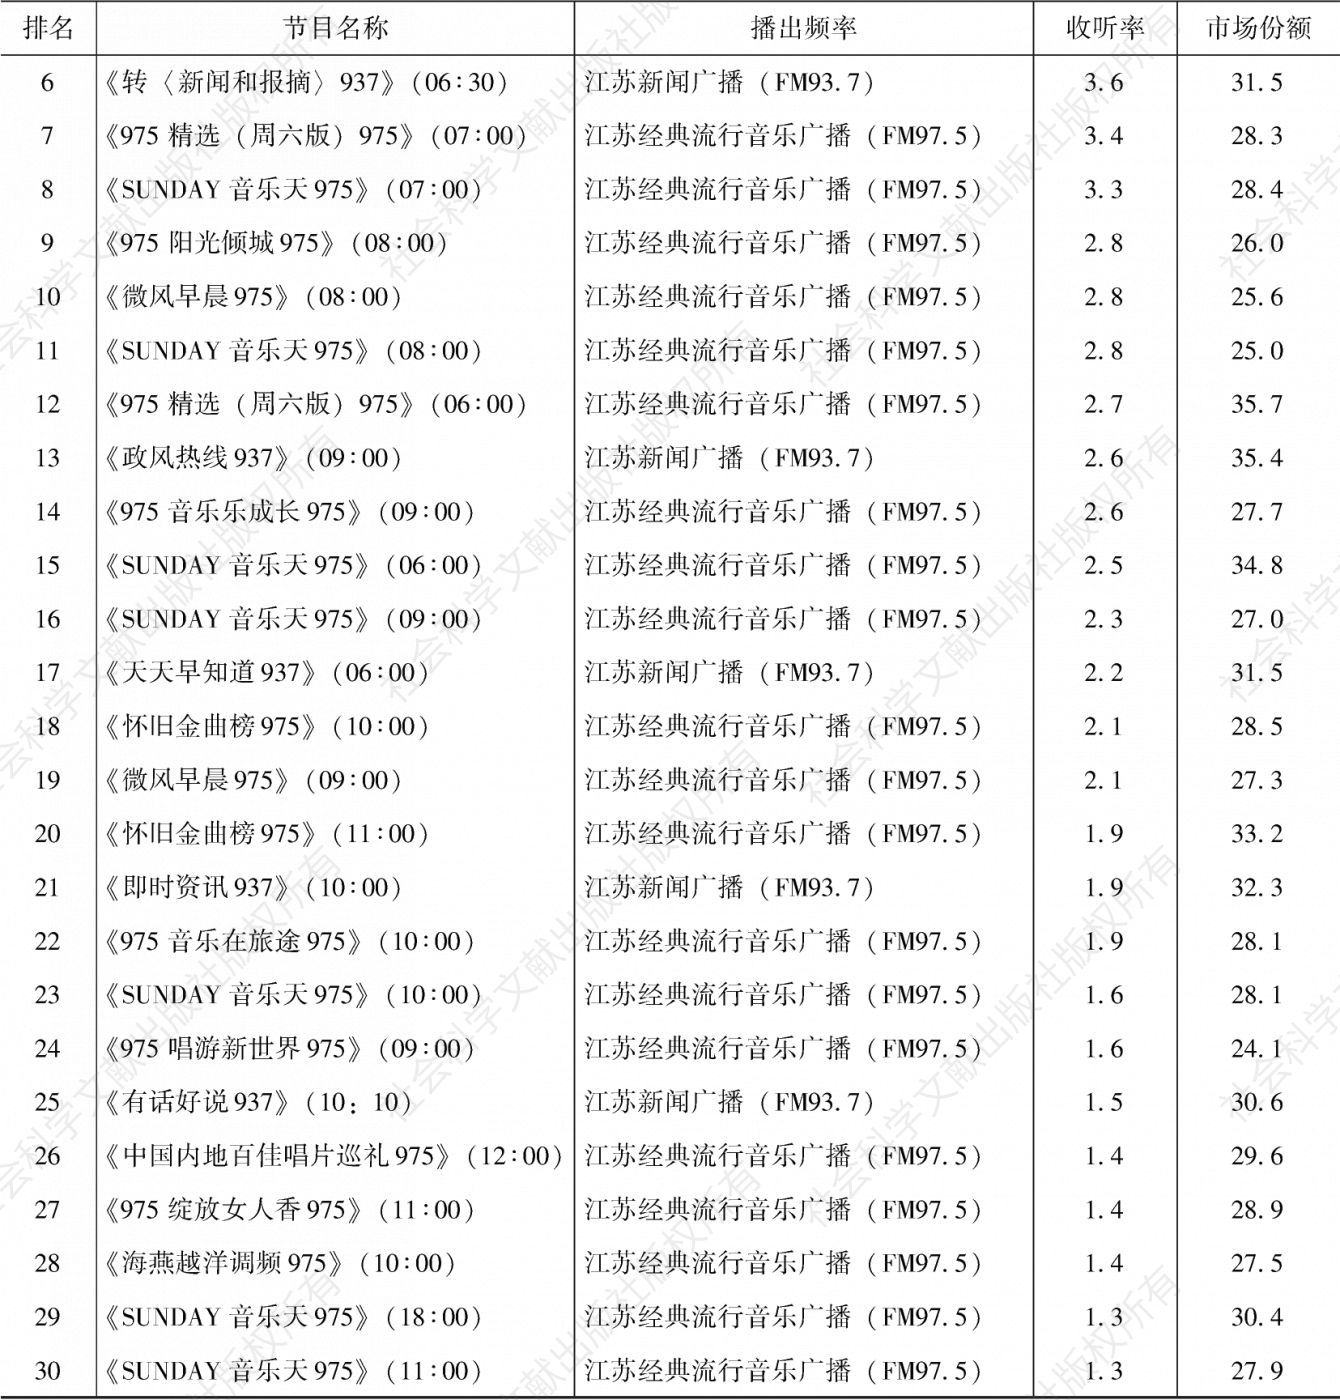 表4.13.7 2020年南京市场收听率排名前30的节目-续表